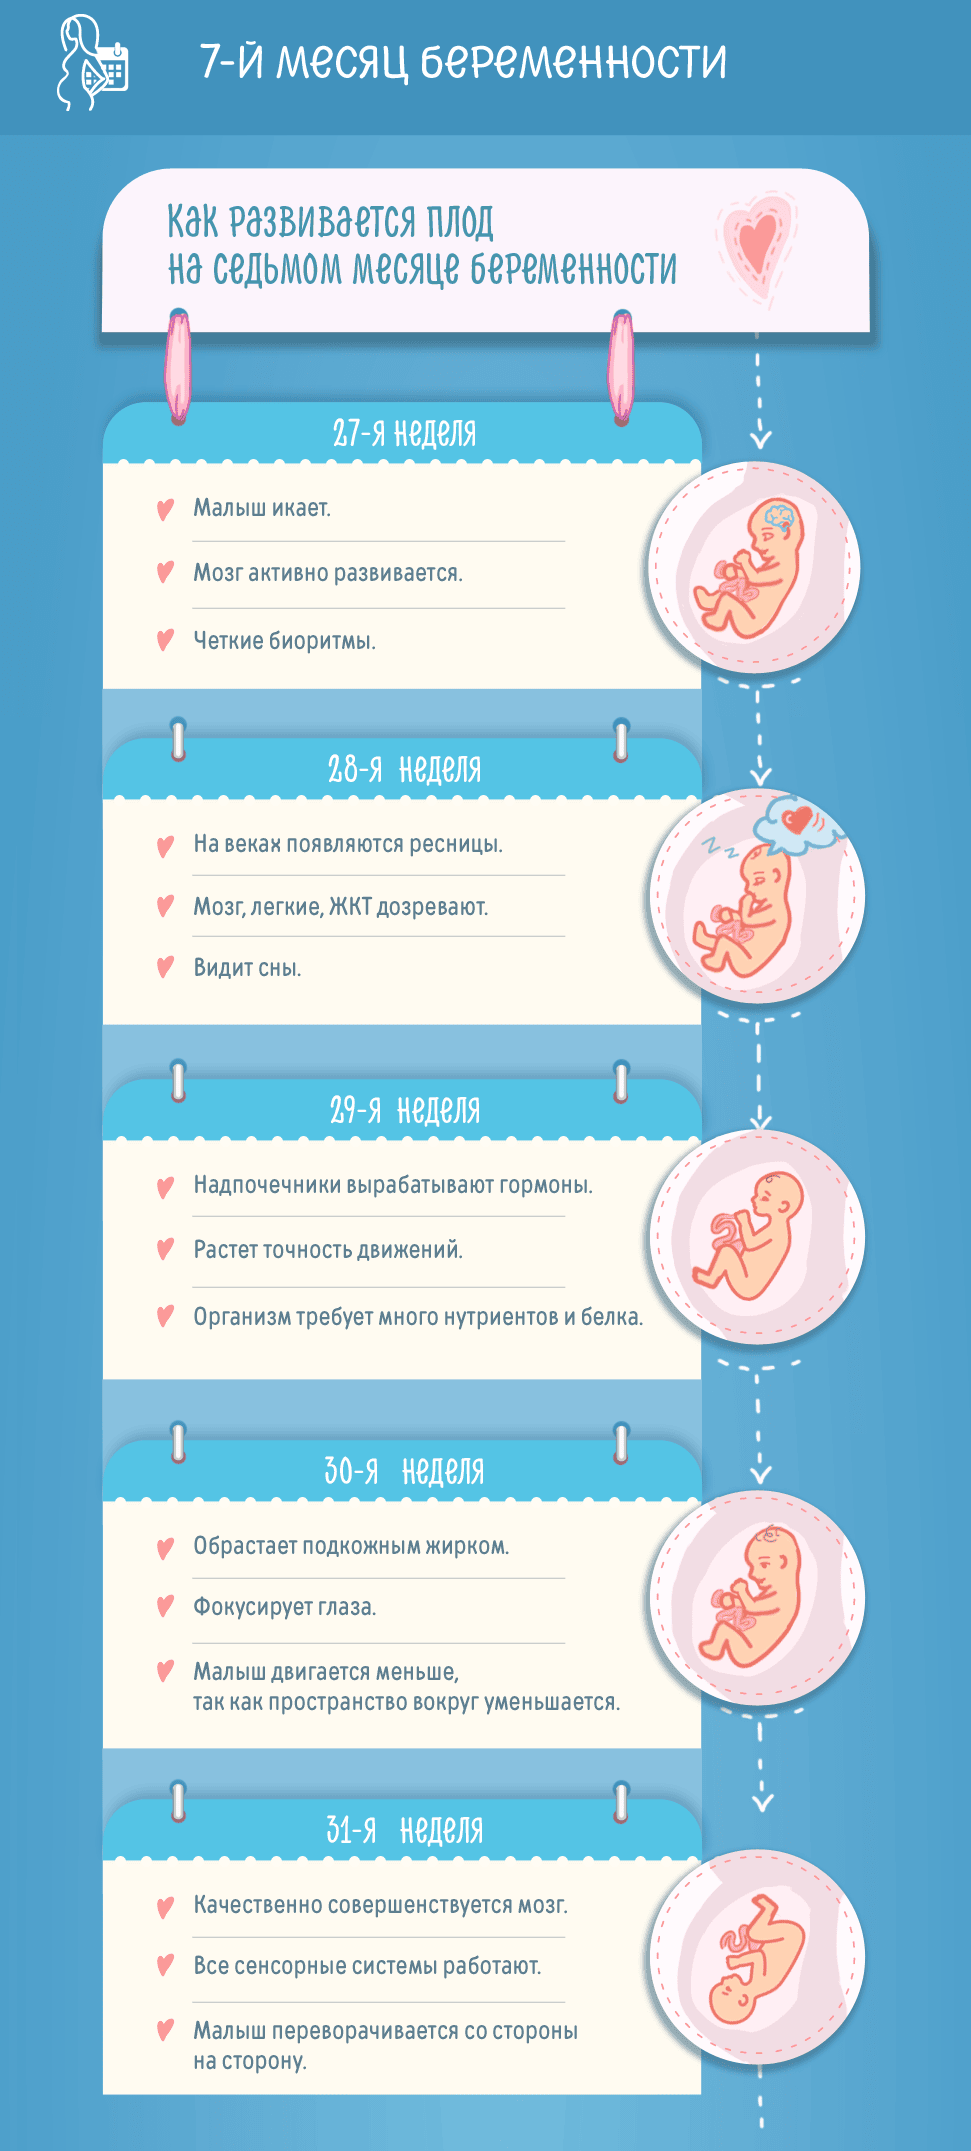 Седьмой месяц беременности: изменения в женском организме и развитие плода по неделям